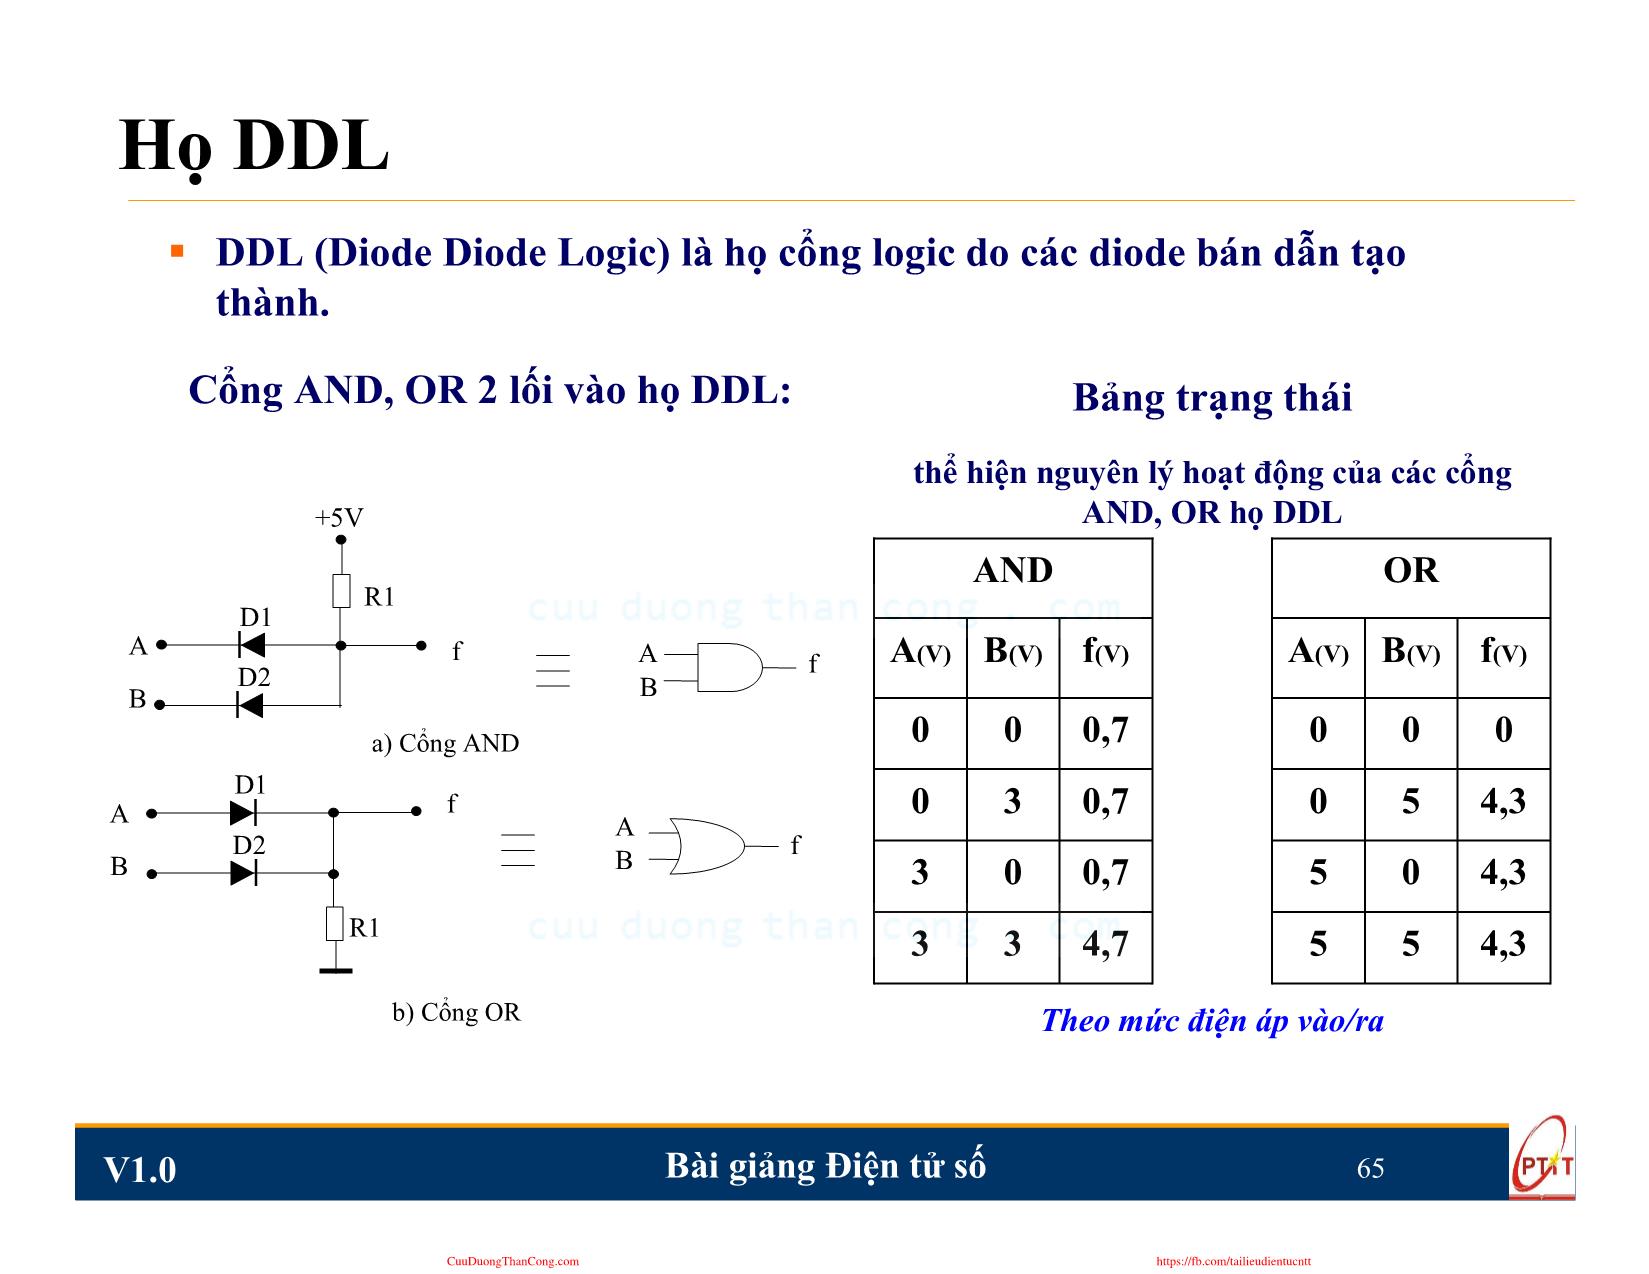 Bài giảng Điện tử số - Chương 3: Cổng logic TTL và CMOS - Nguyễn Trung Hiếu trang 4